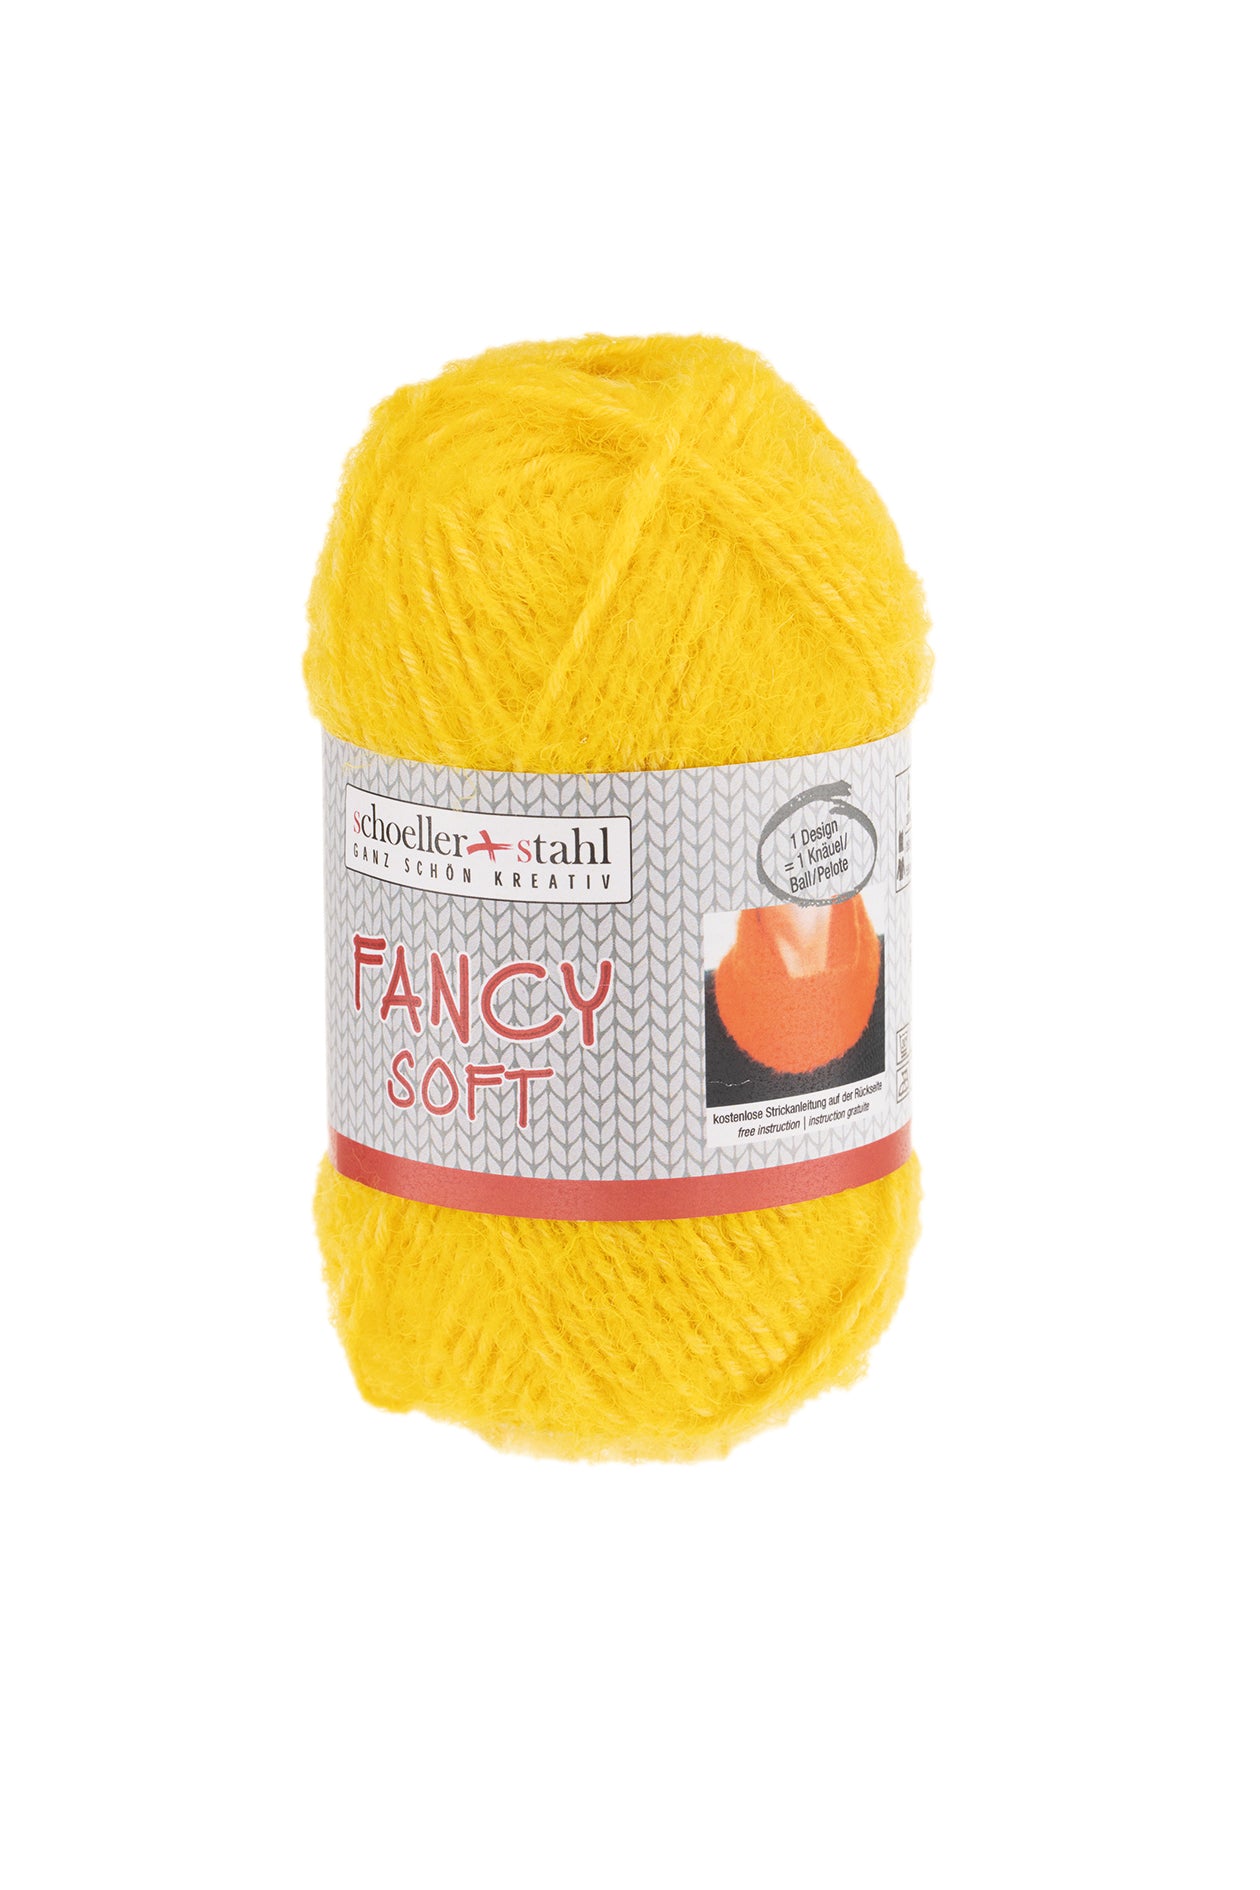 Fancy Soft  50g, 90233, Farbe 6, gelb